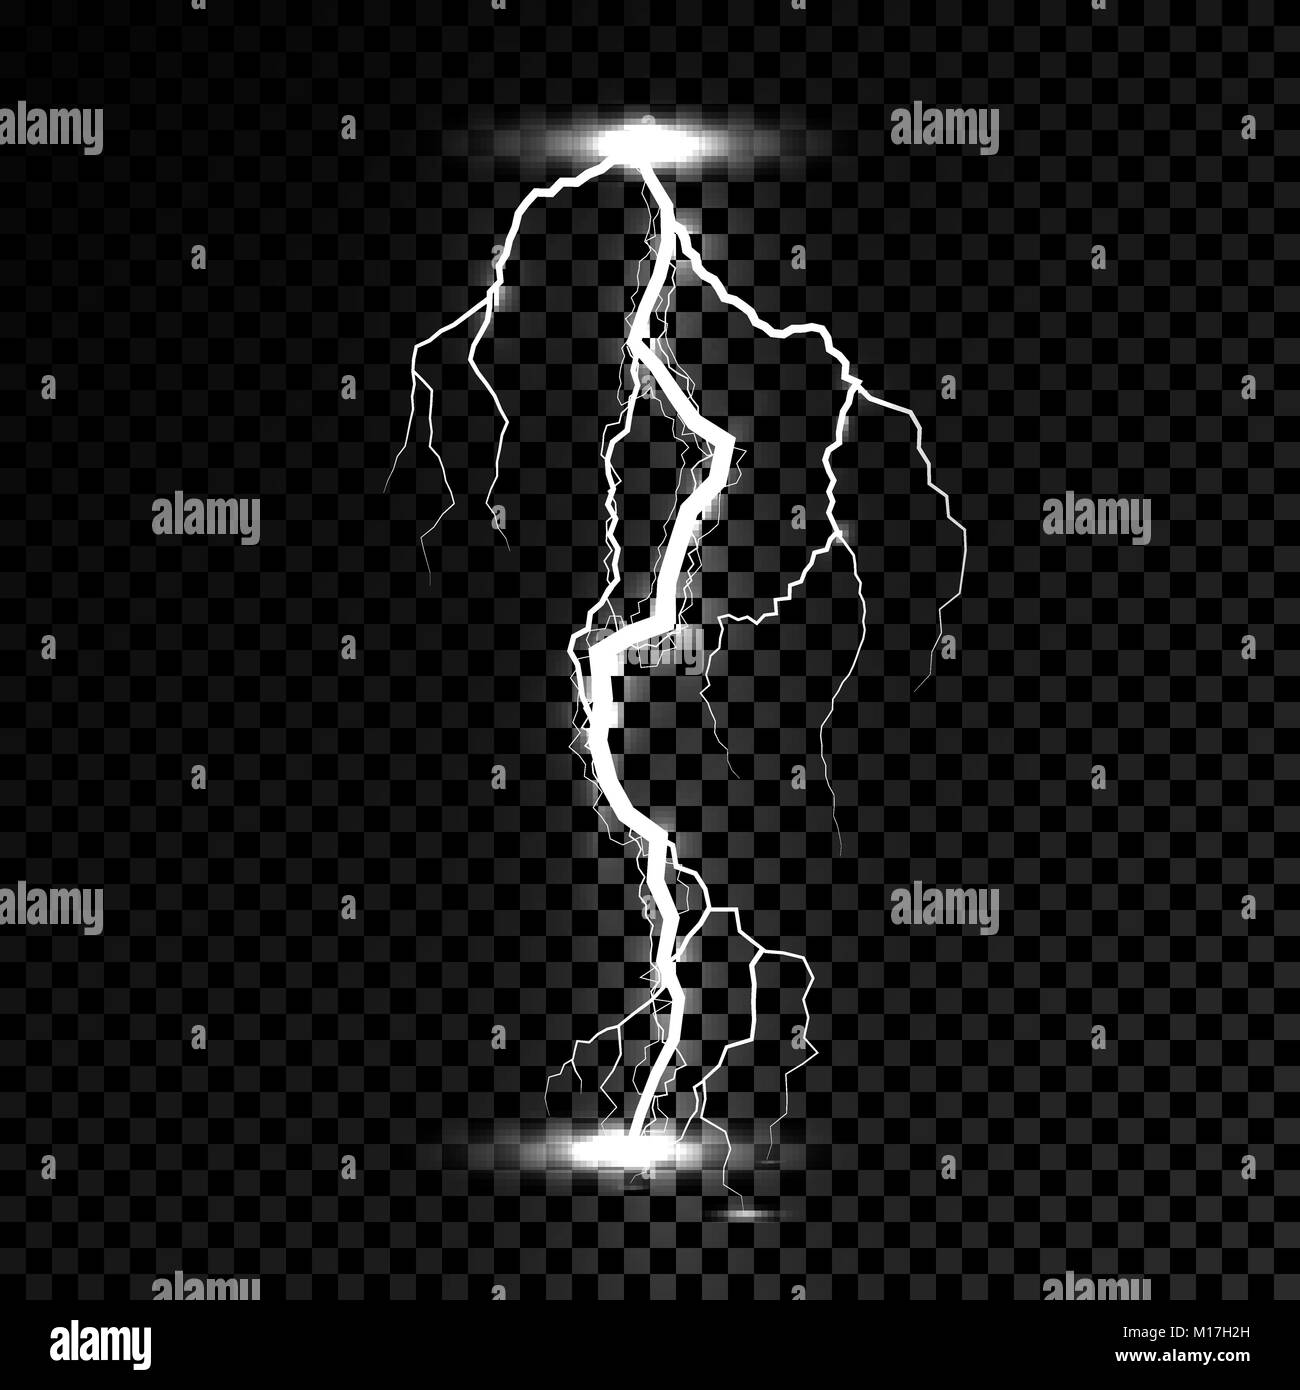 Lampi luce flash thunder scintilla. Vite del vettore di fulmini o elettricità blast storm o Thunderbolt su sfondo trasparente Illustrazione Vettoriale